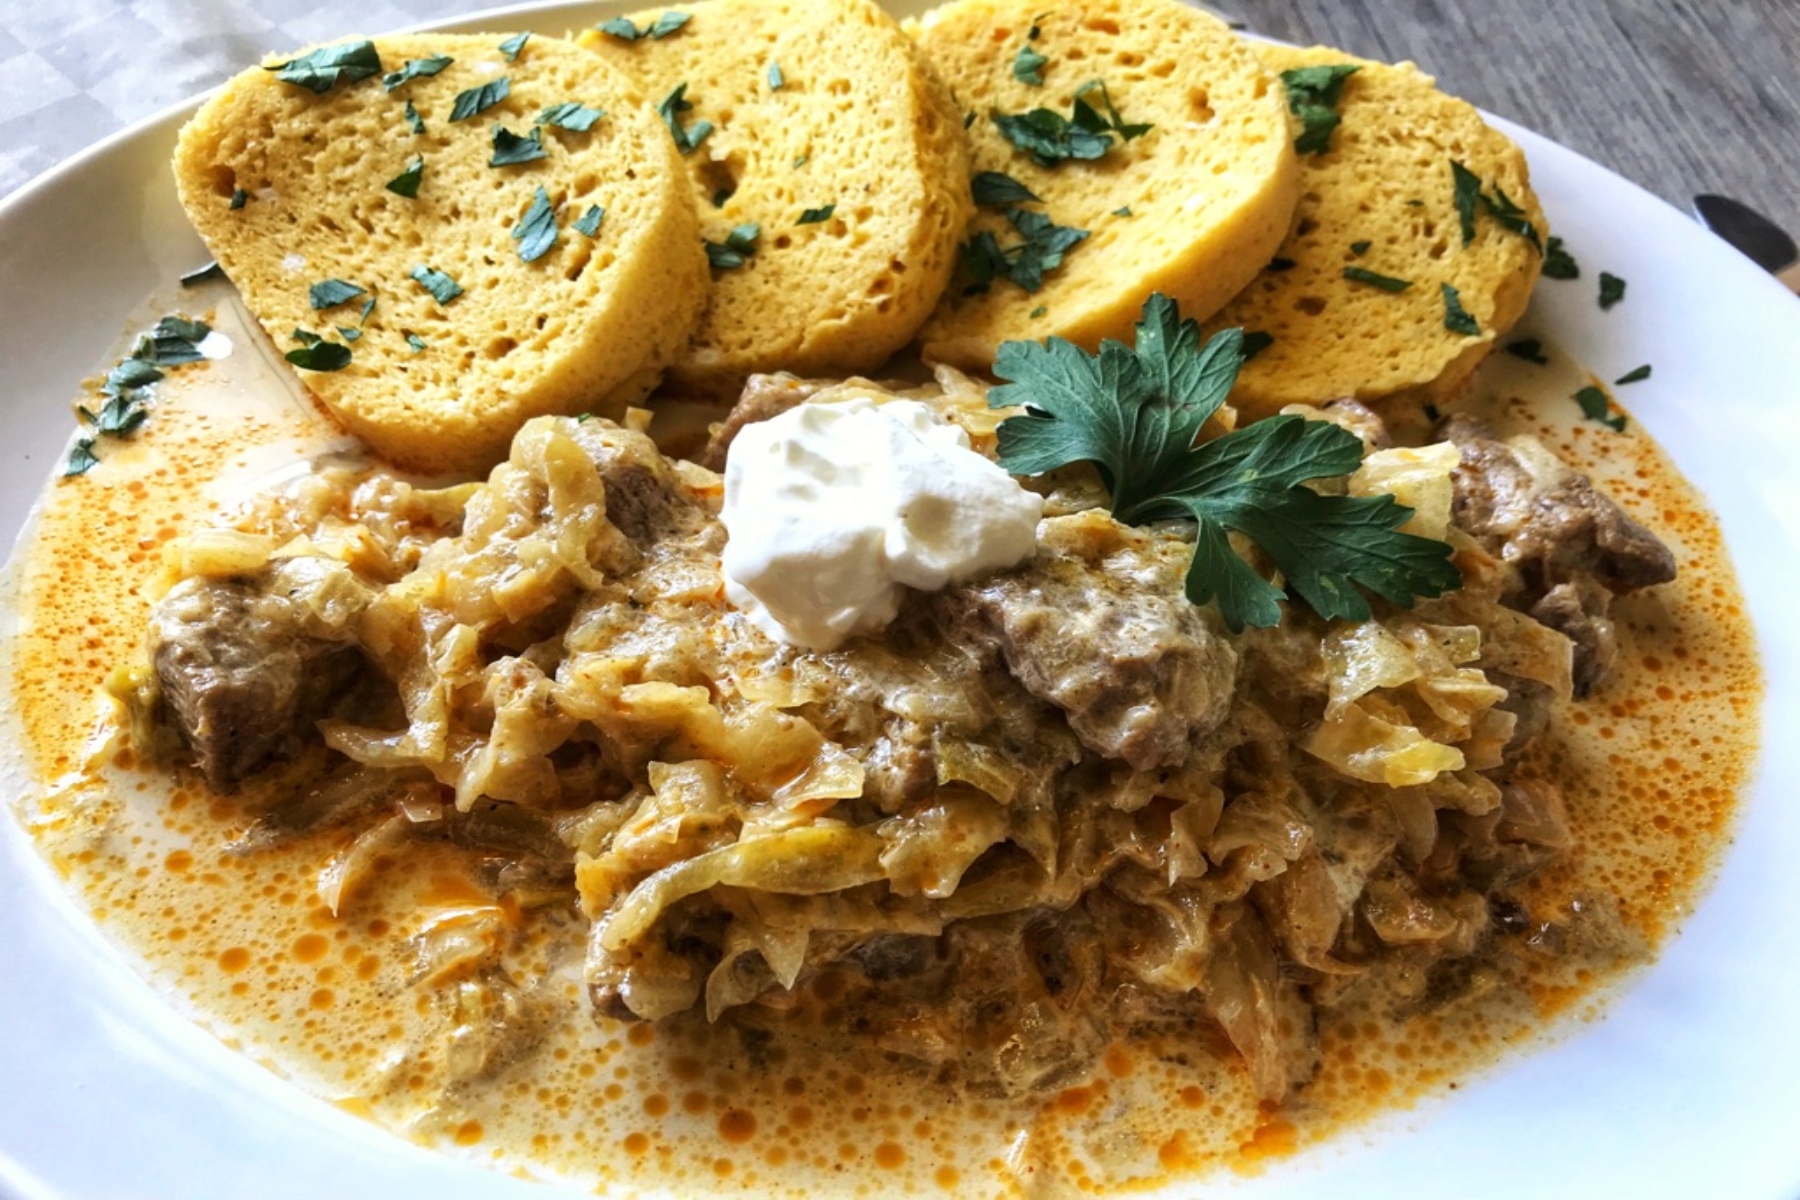 Σλοβακία φαγητό: Ποια είναι τα παραδοσιακά πιάτα της Σλοβακίας;